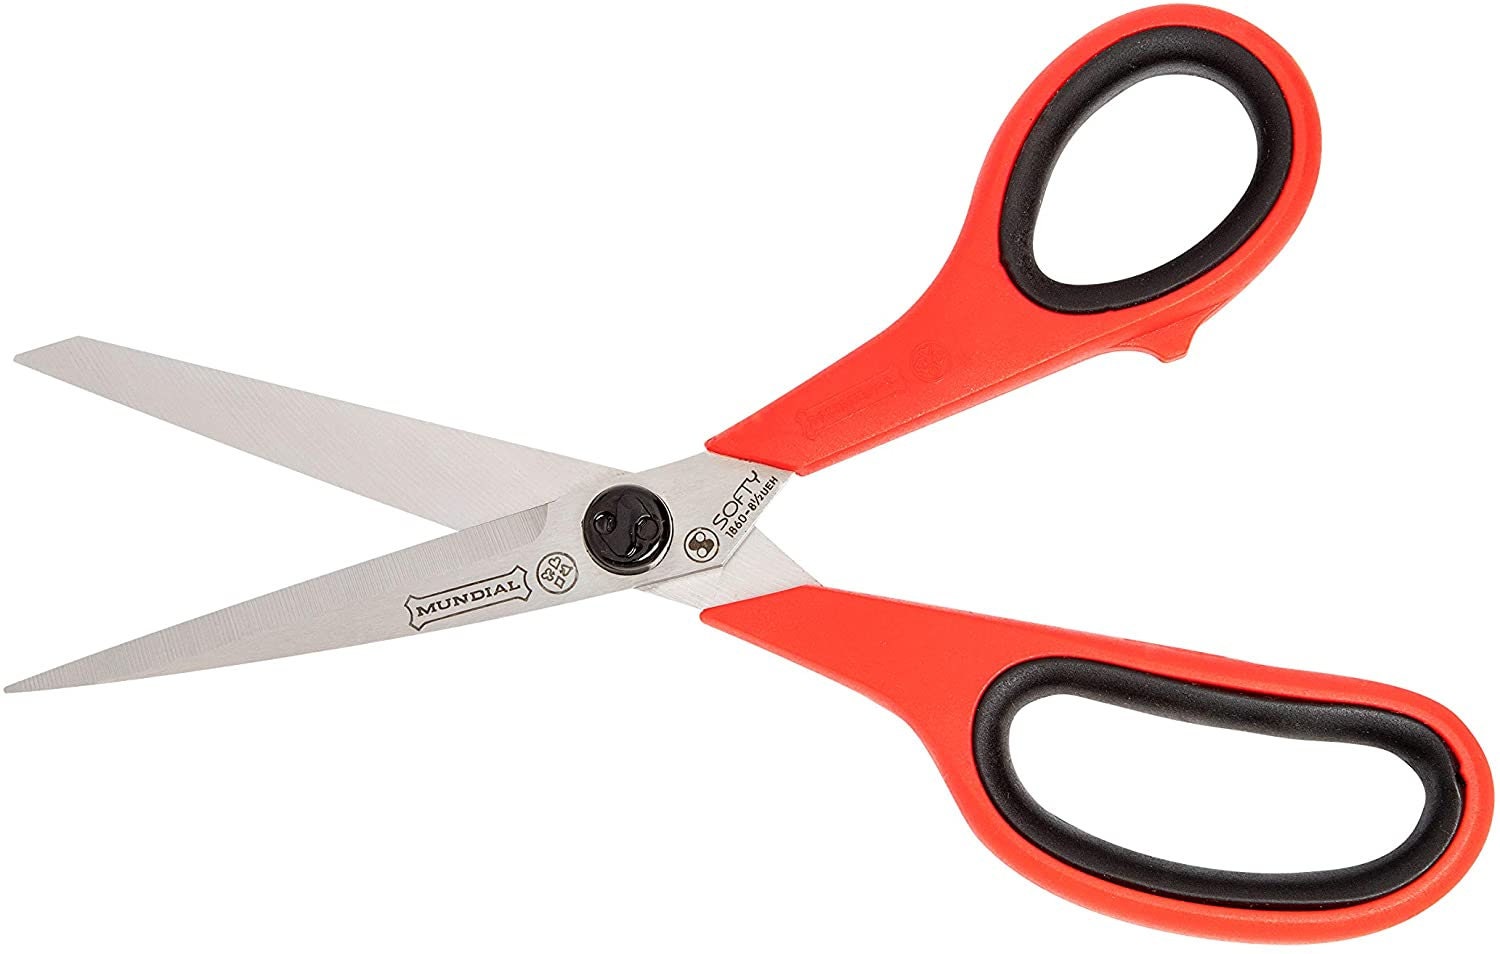 Mundial Industrial Scissors, featuring model 252